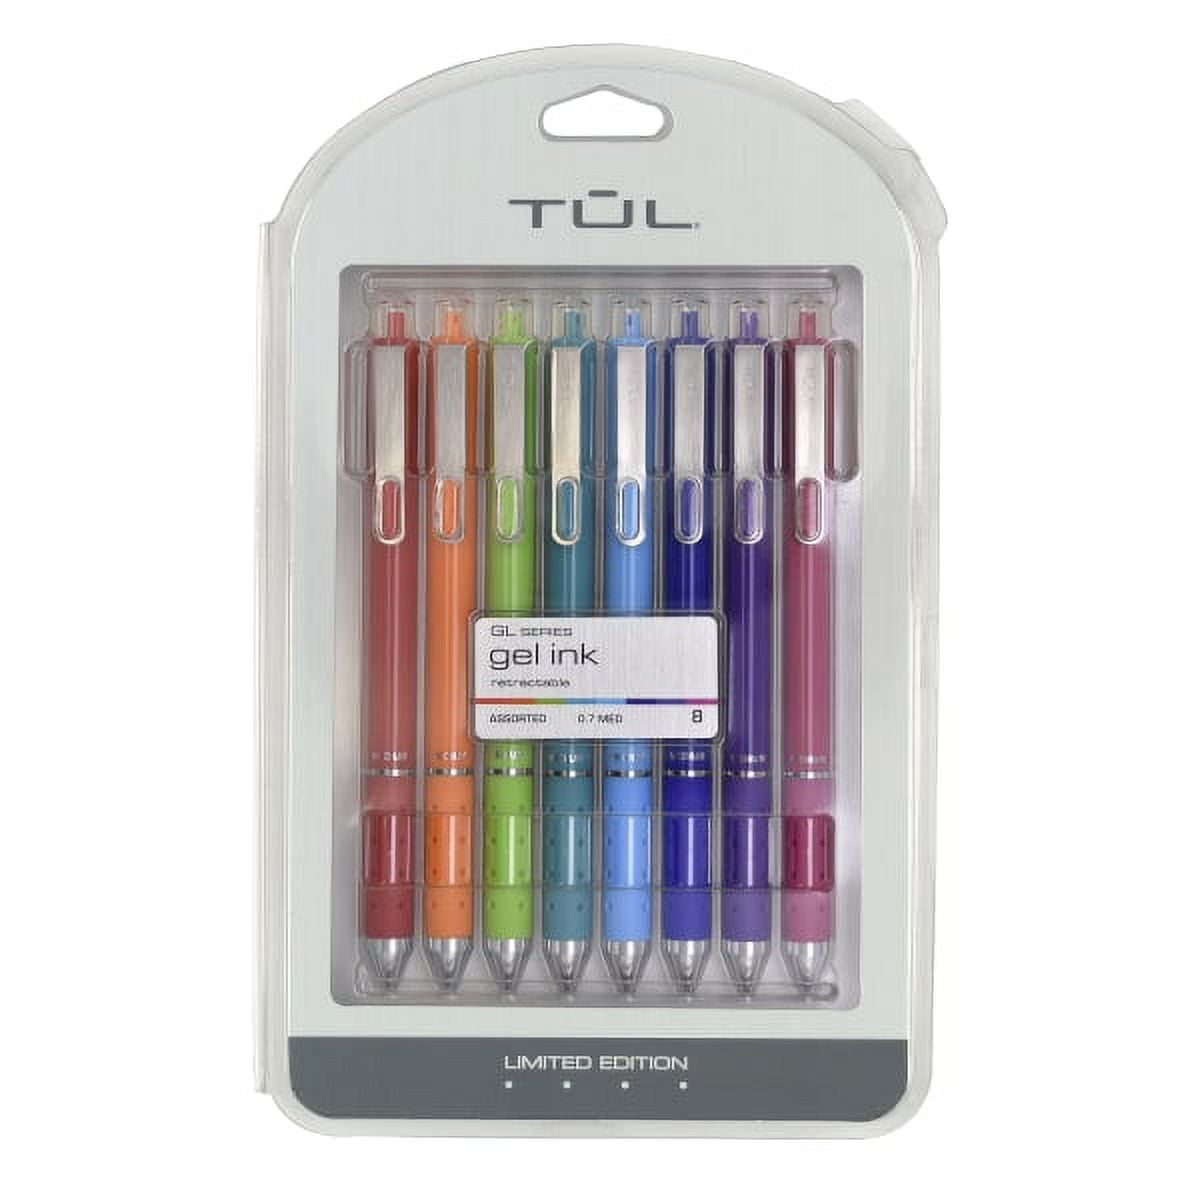 Sharpie S Gel Pens Bold Point 1.0 mm Black Barrels Assorted Ink Pack Of 4  Pens - Office Depot